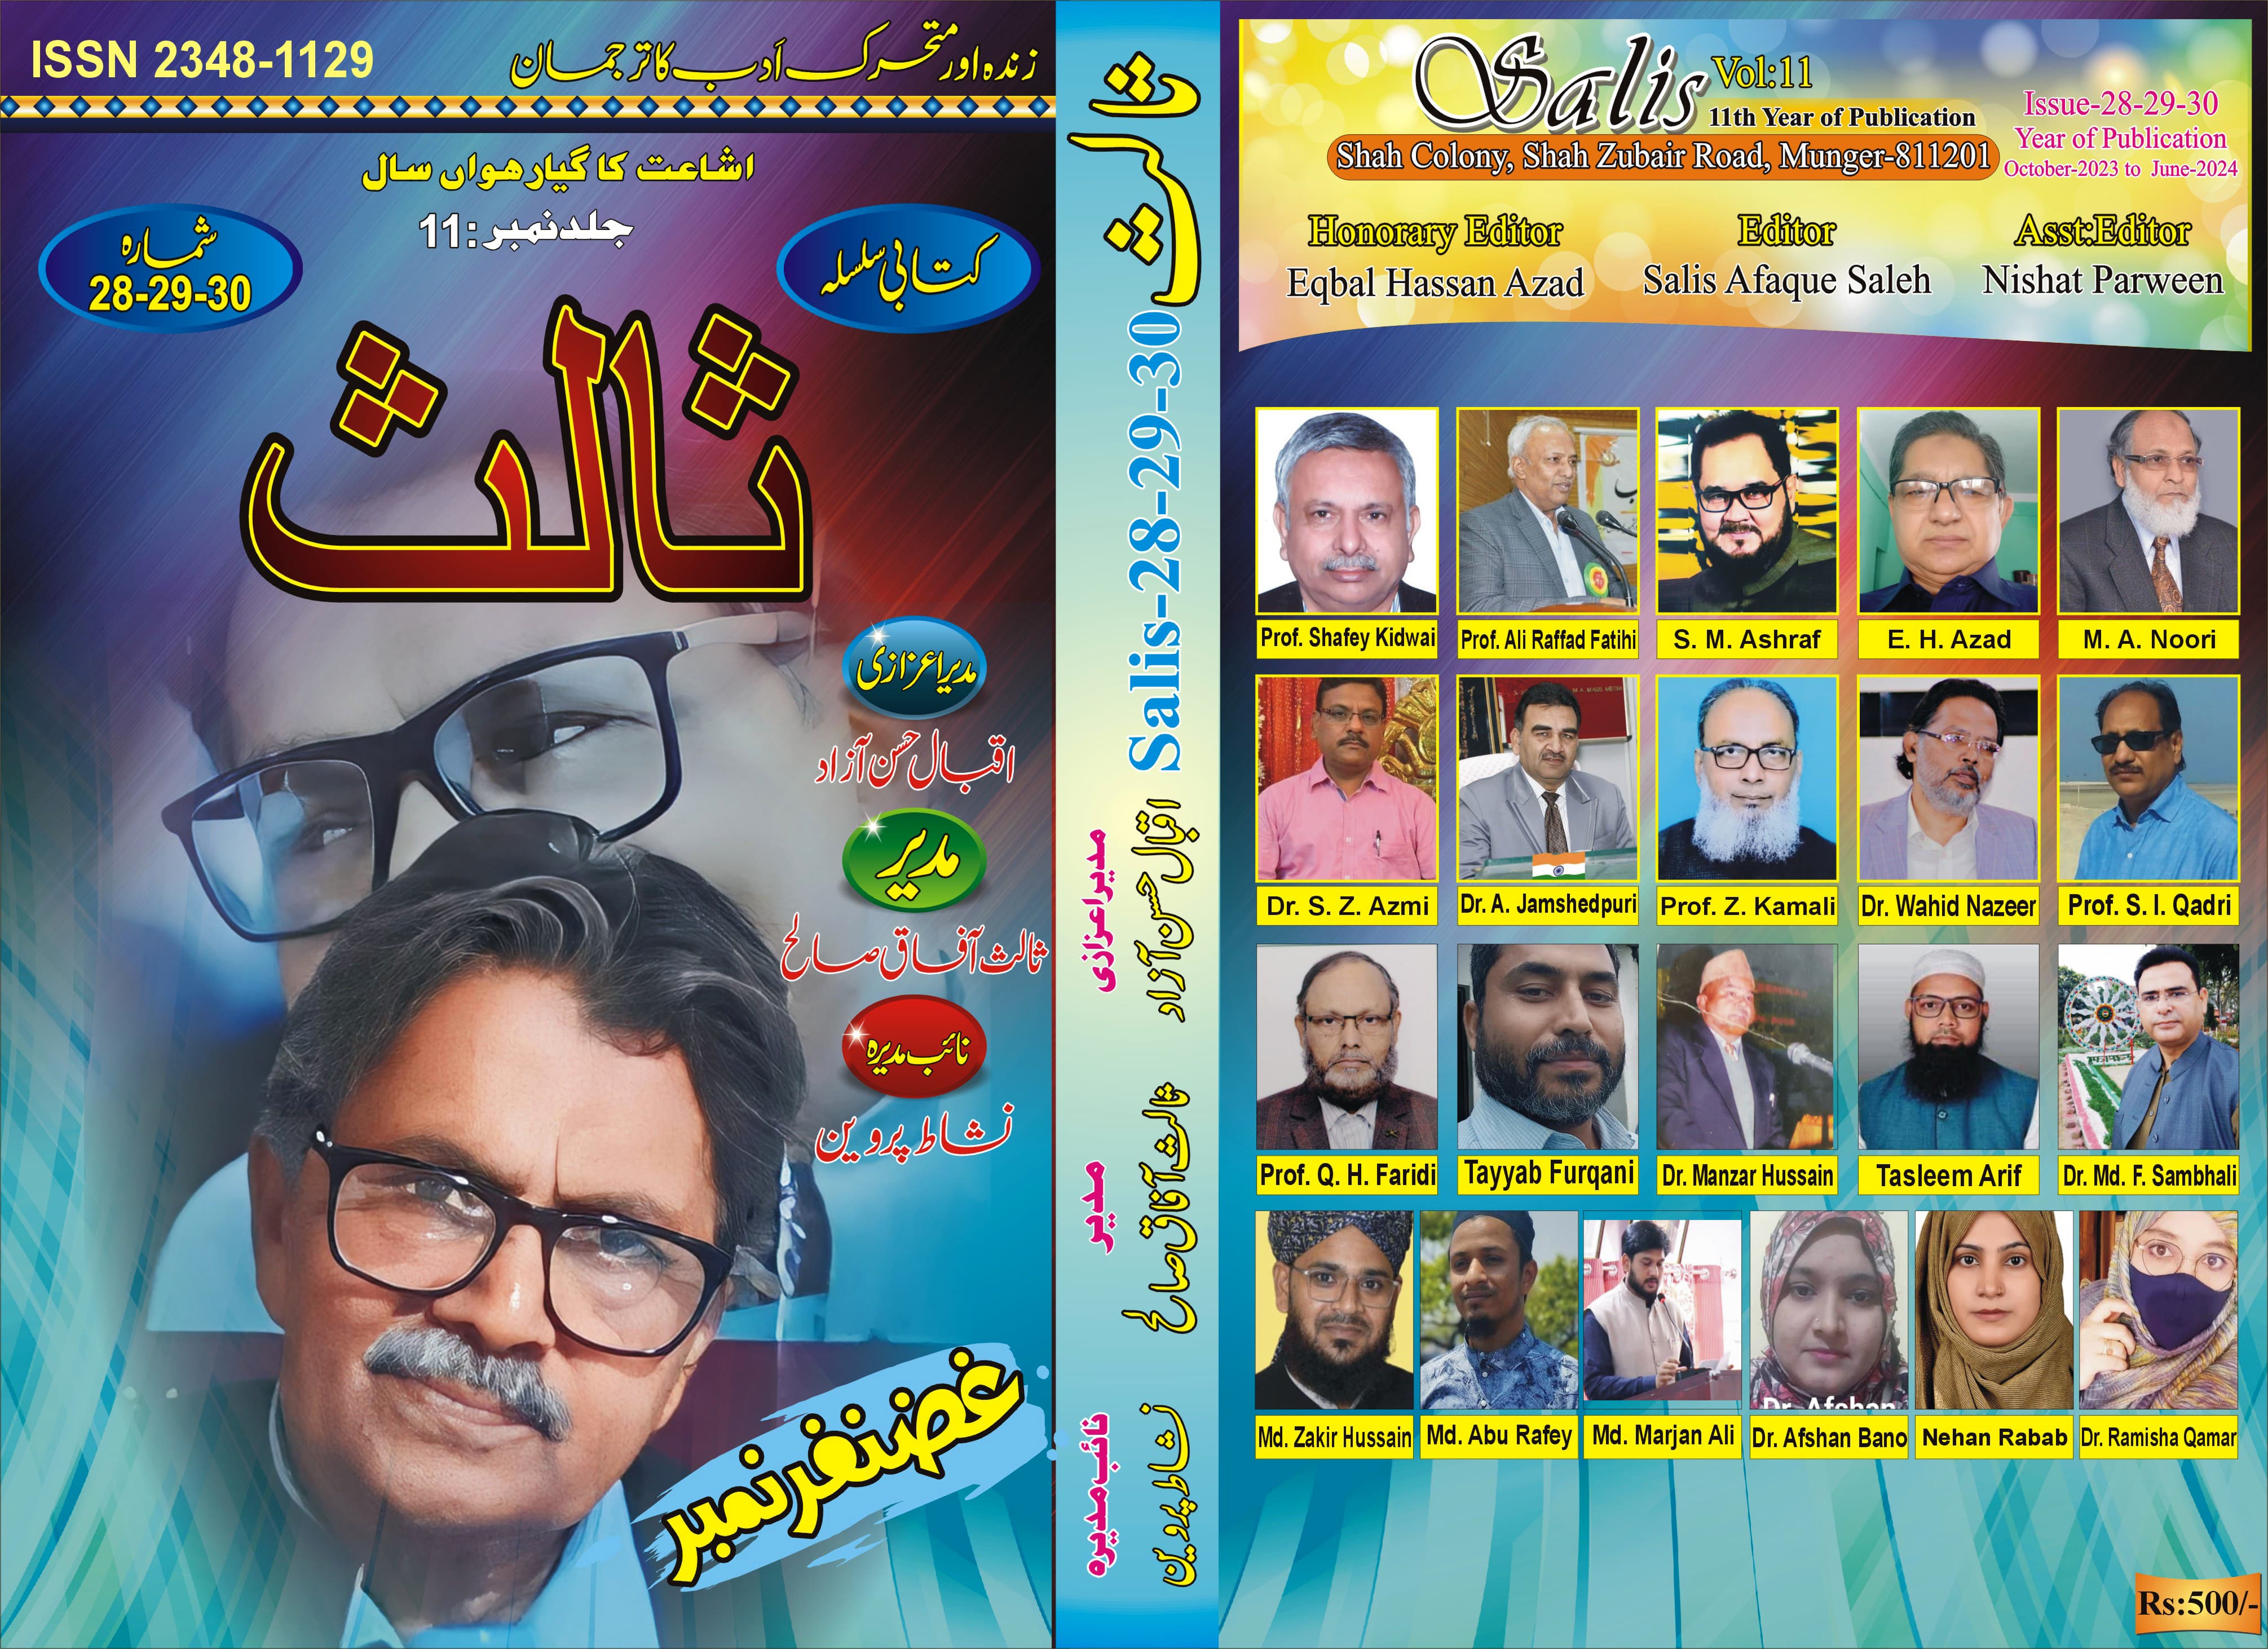 India's No. 1 Urdu Magazine